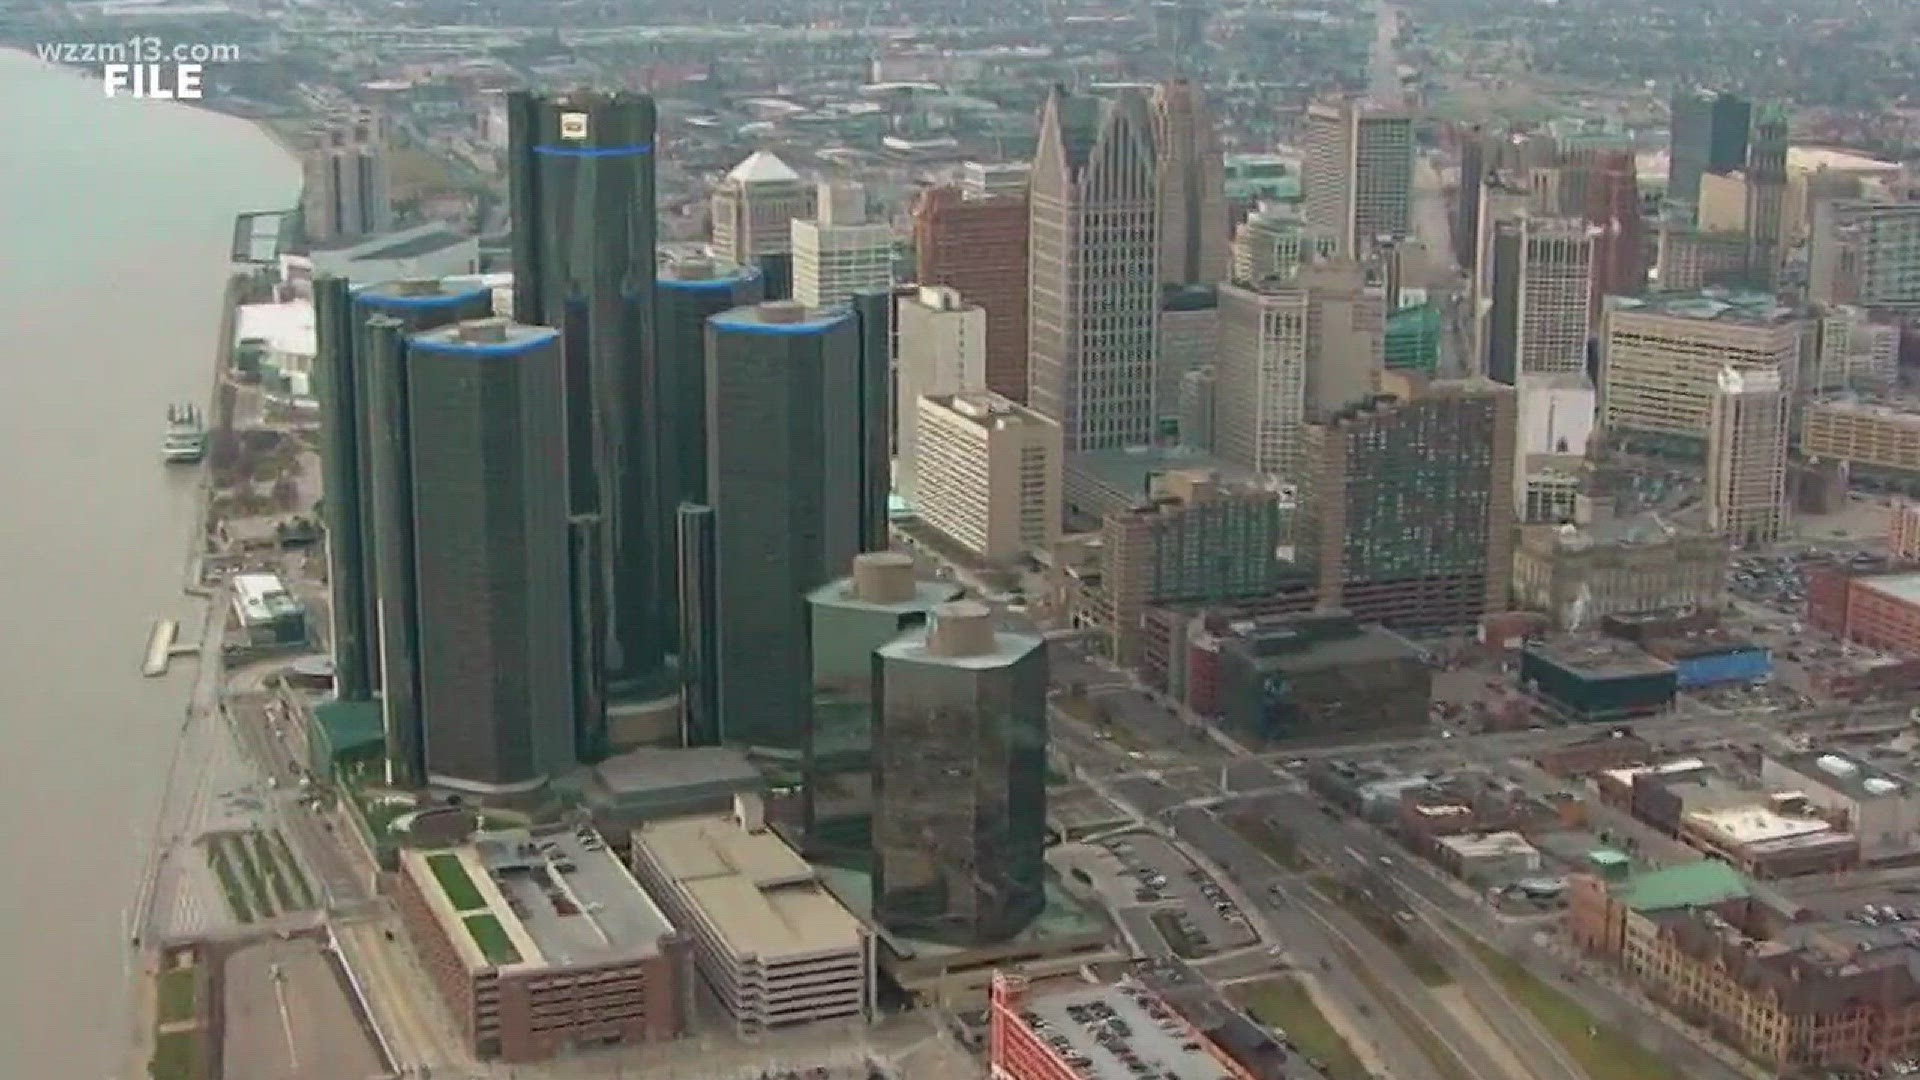 Detroit a top tourist destination according to study